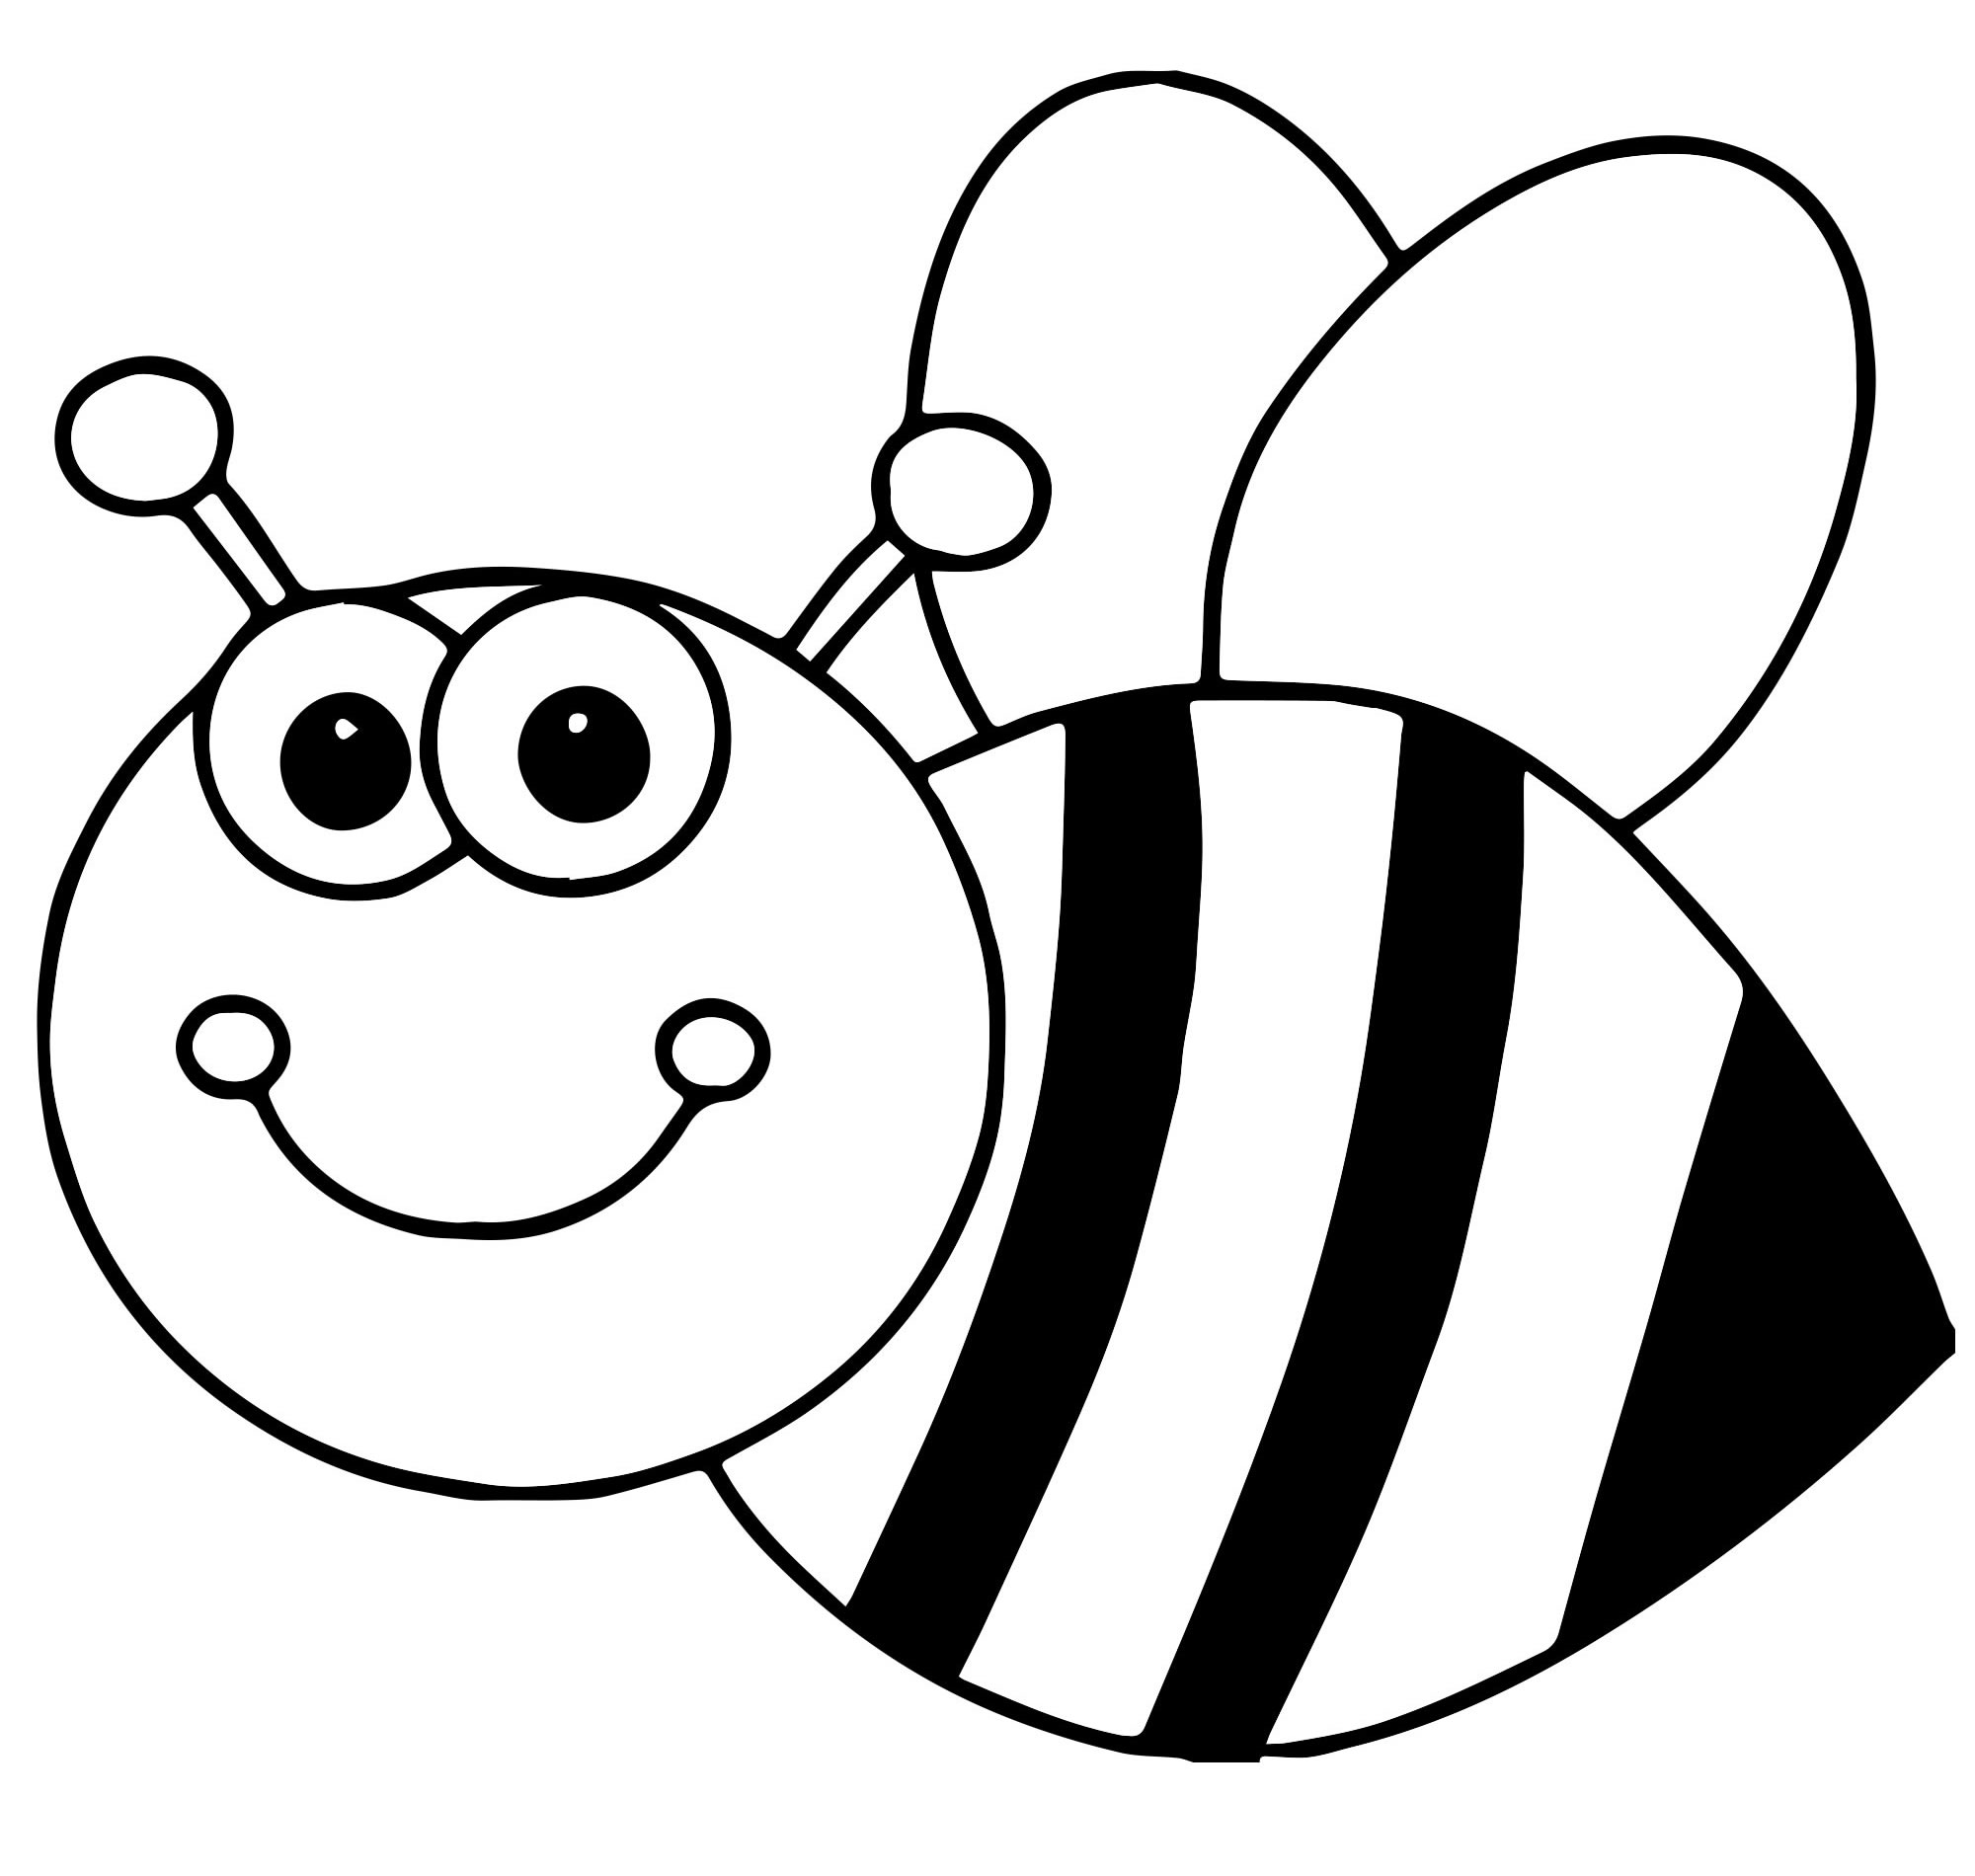 Скачать или распечатать раскраски Пчела для детей